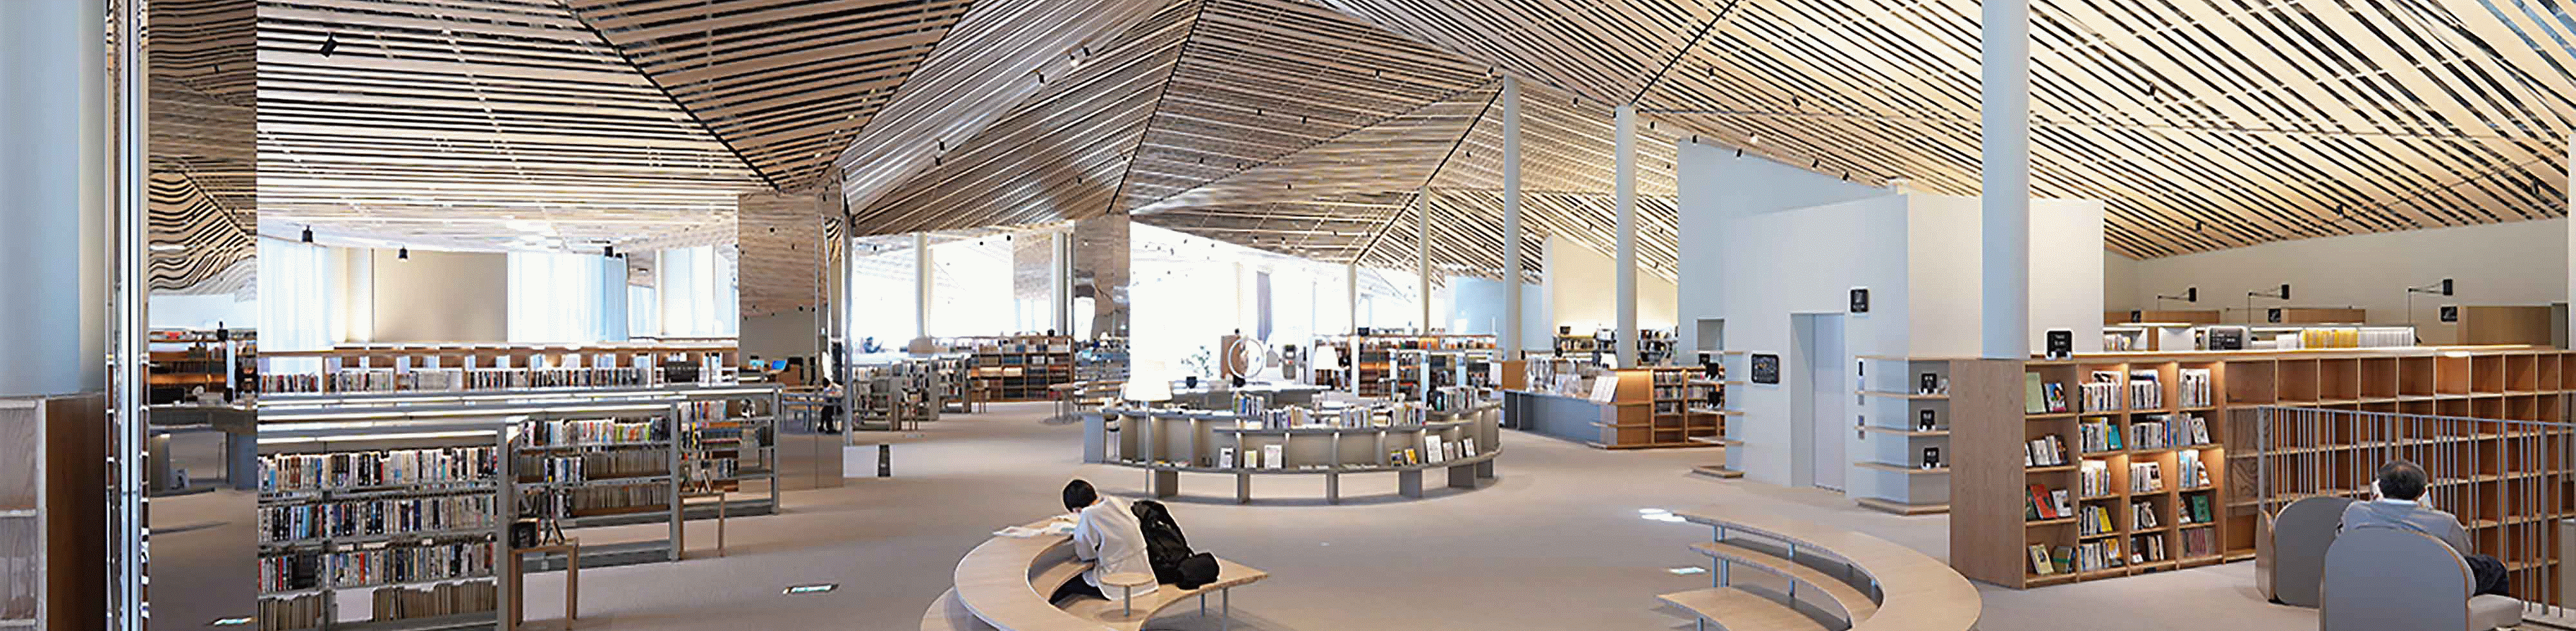 大型圖書館的內部空間影像，圖書館的天花板有許多筆直的木板，設計繁複，且整幅影像皆具備清晰解析度